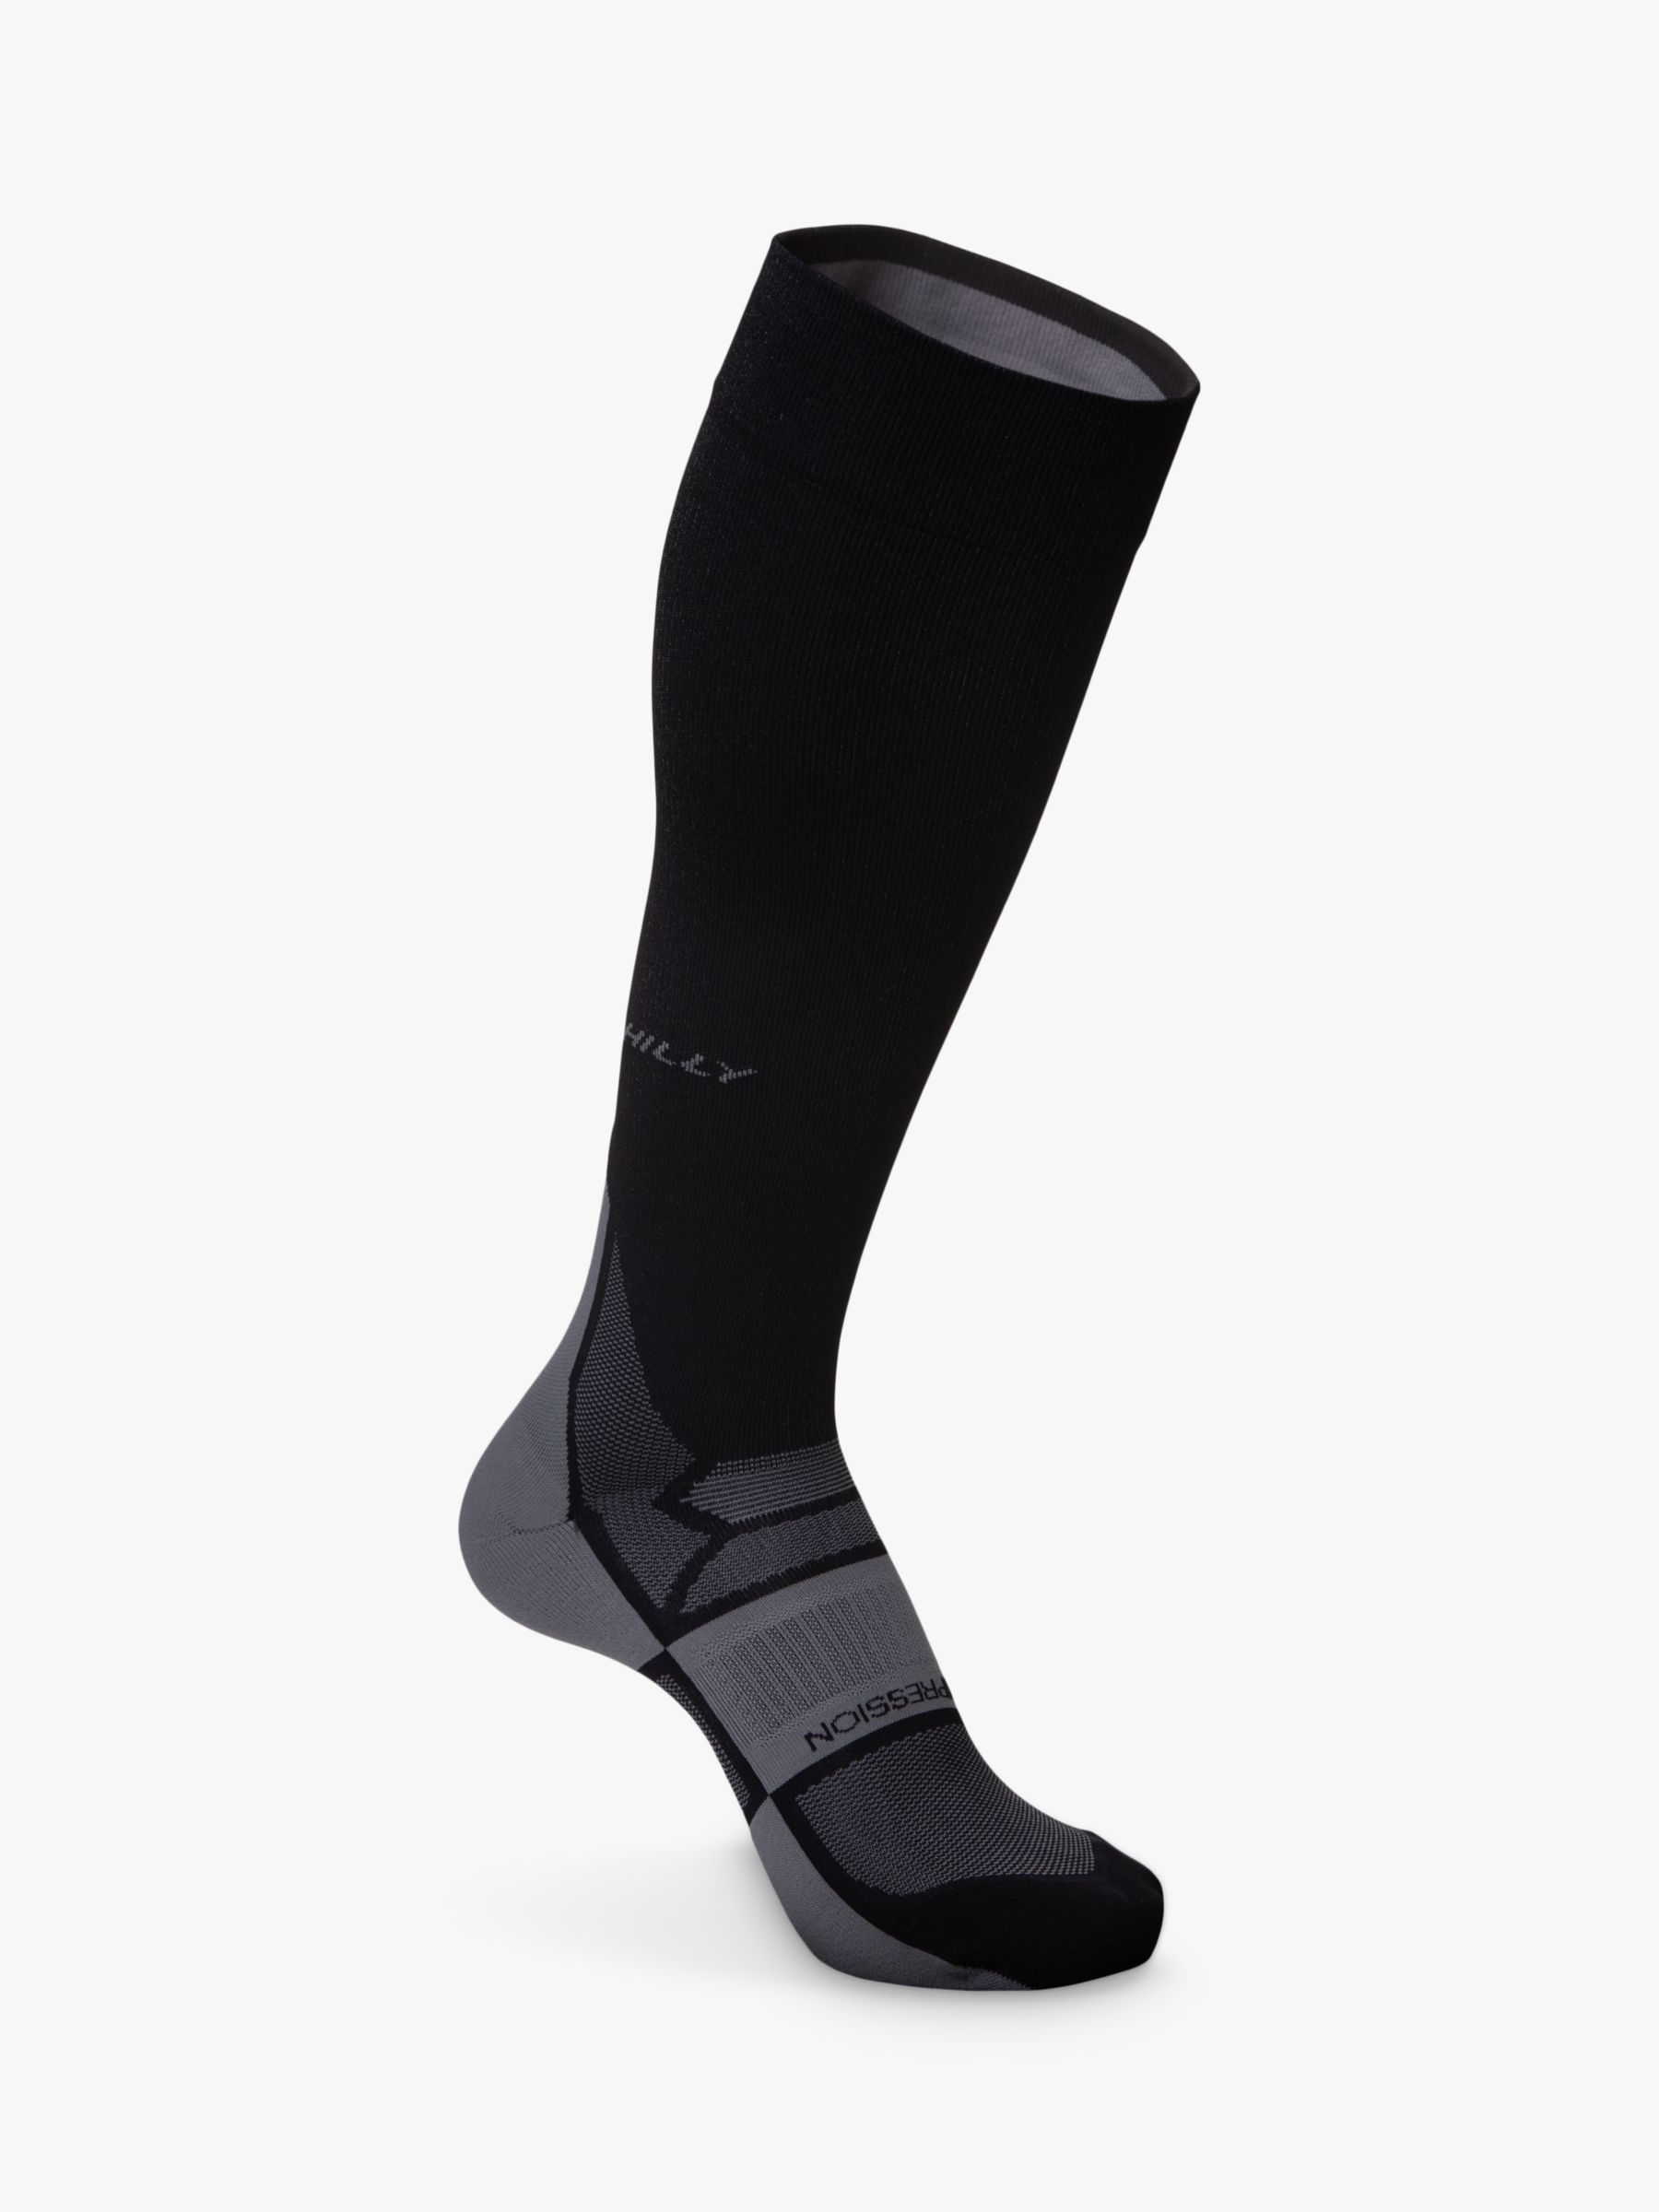 Компрессионные носки для бега Hilly Pulse компрессионные носки для бега для медсестер 6 пар компрессионные спортивные носки для медсестер компрессионные носки